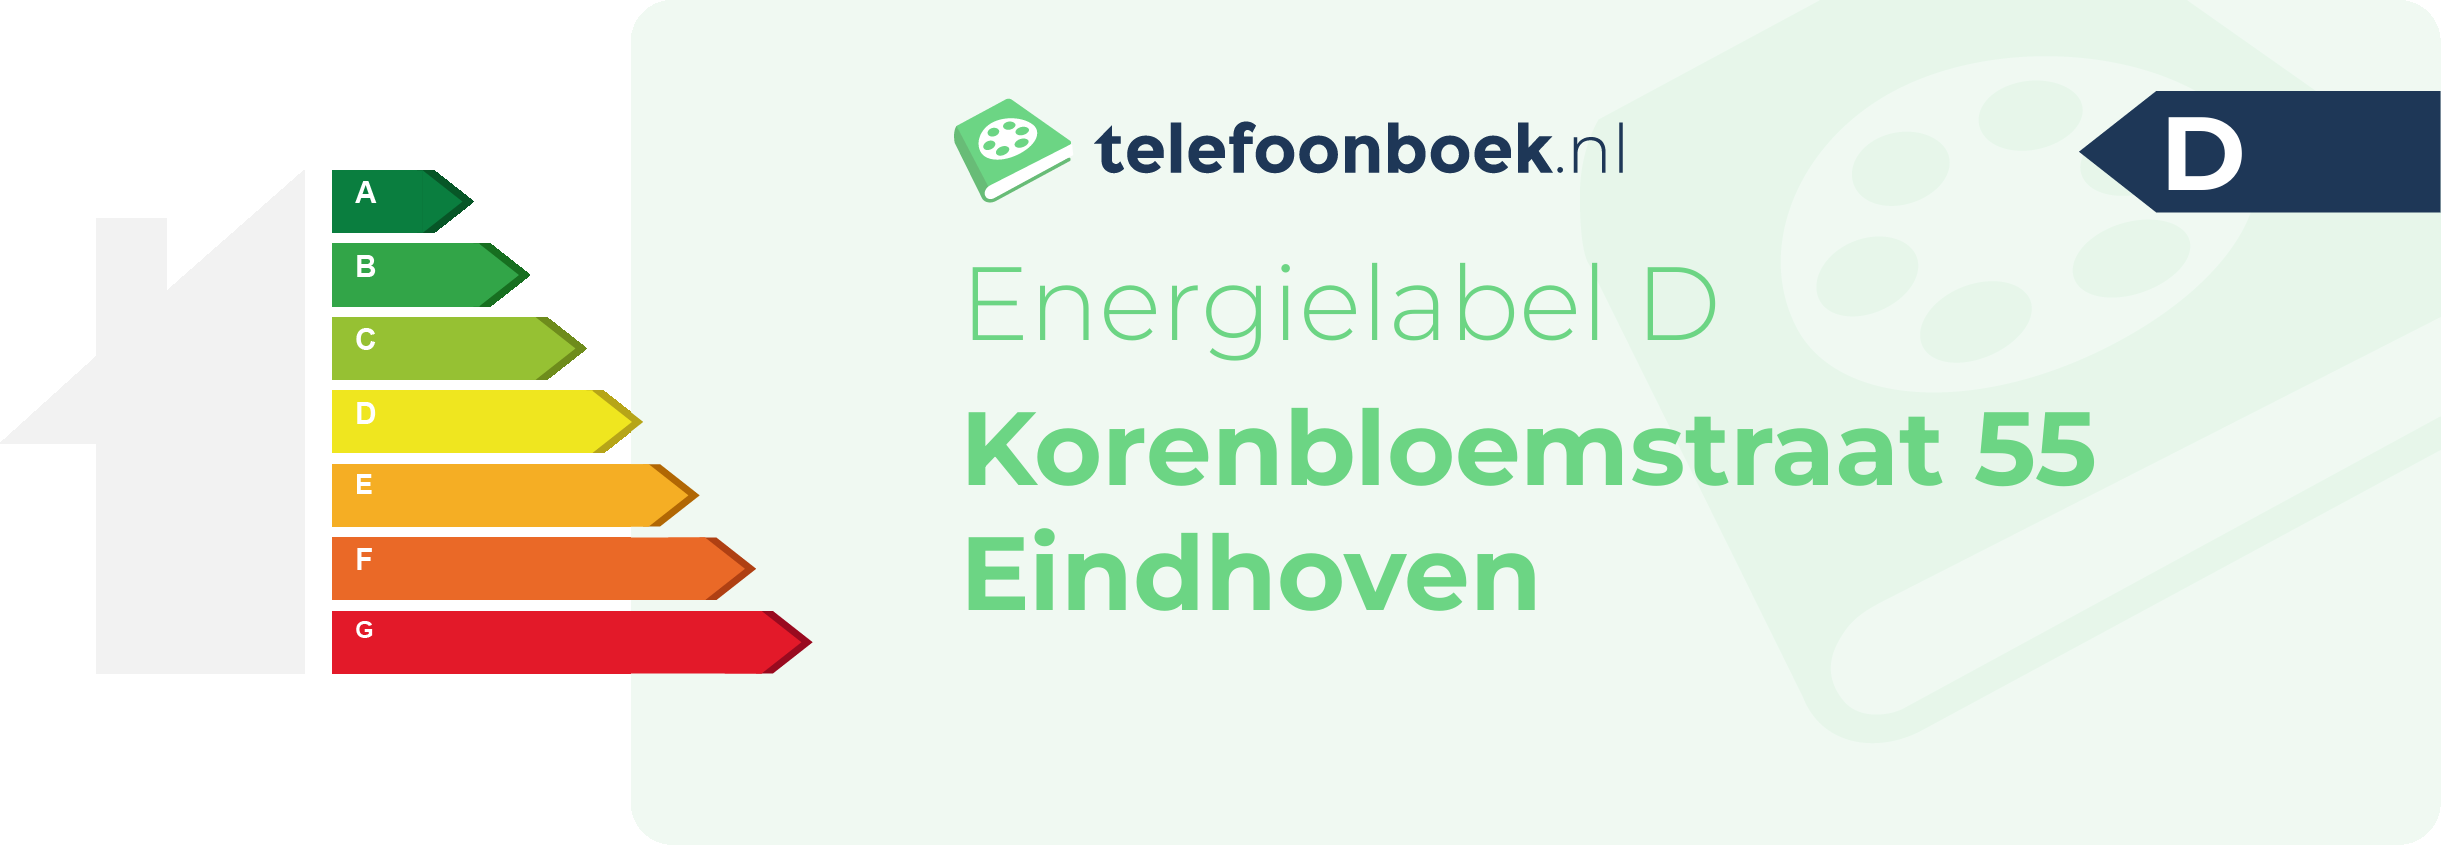 Energielabel Korenbloemstraat 55 Eindhoven